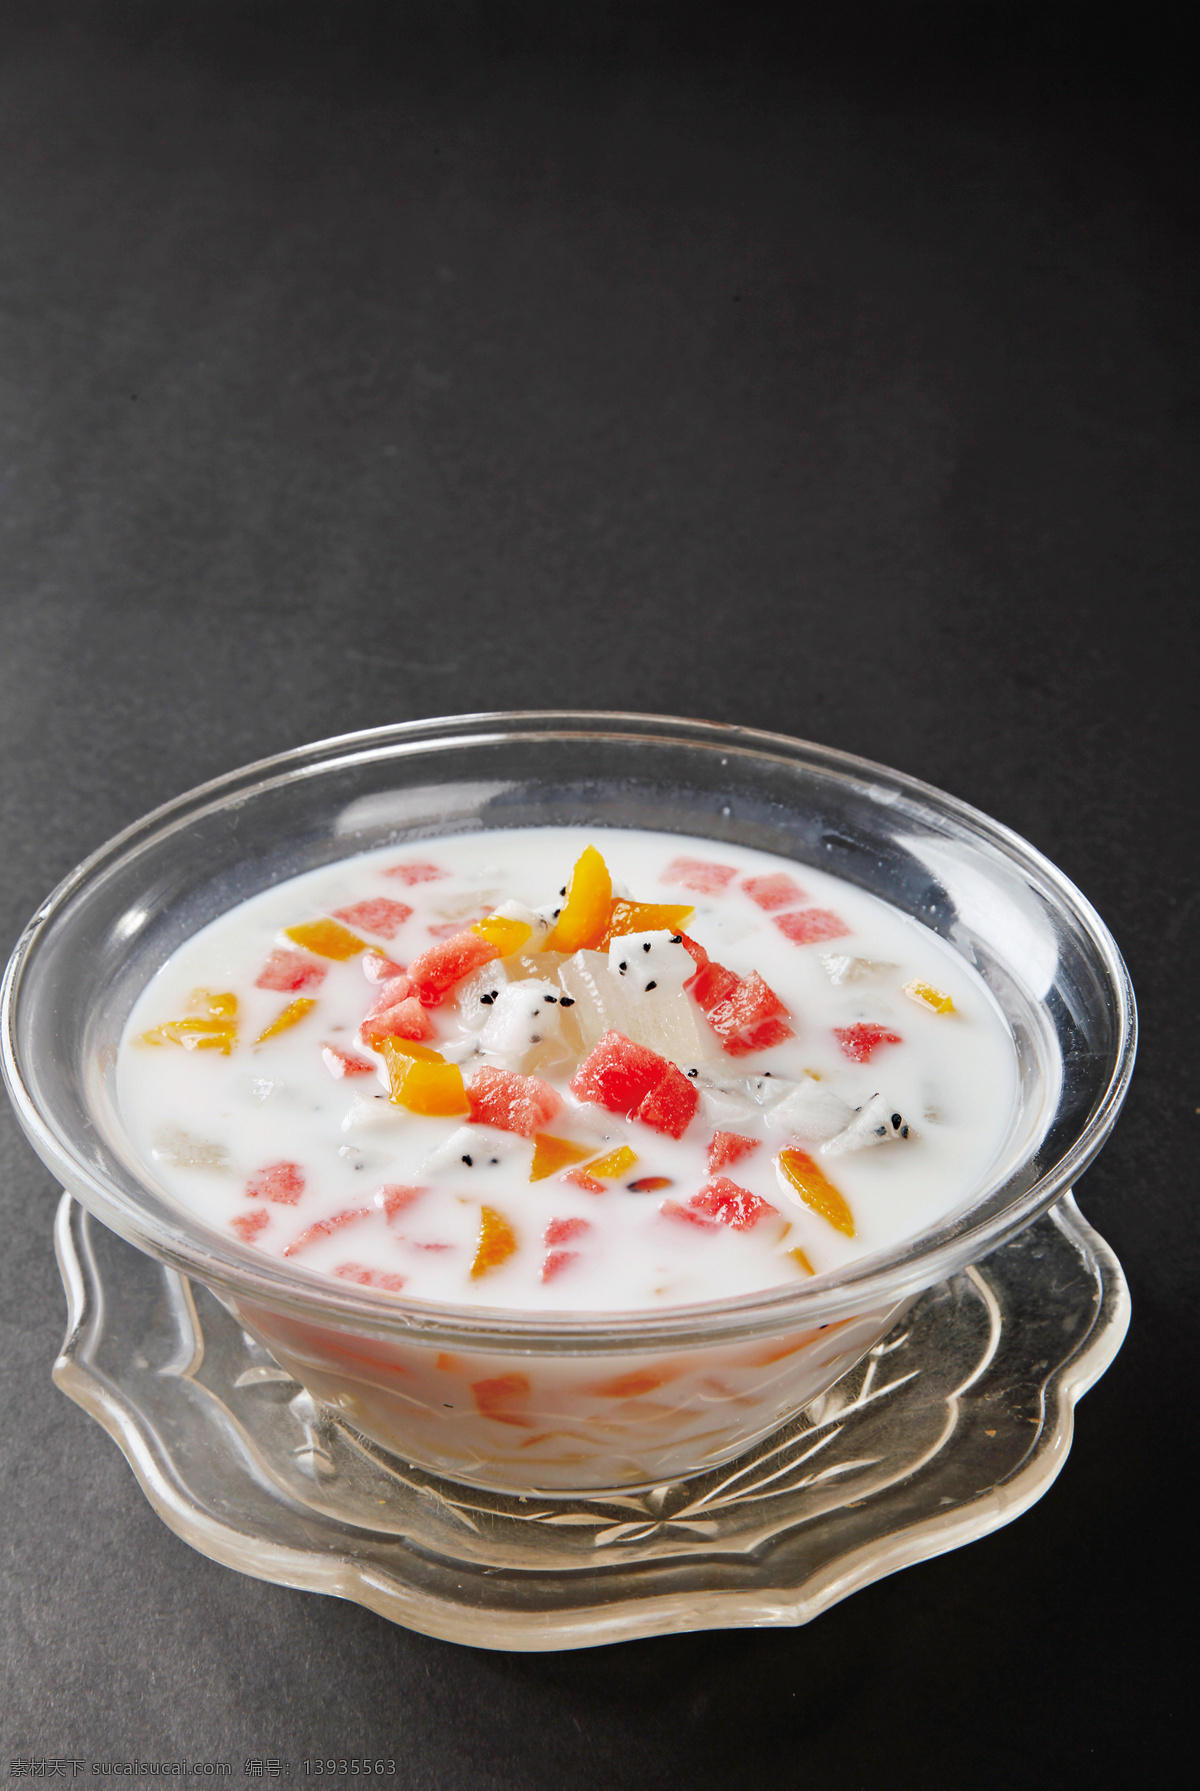 酸奶芦荟 美食 传统美食 餐饮美食 高清菜谱用图